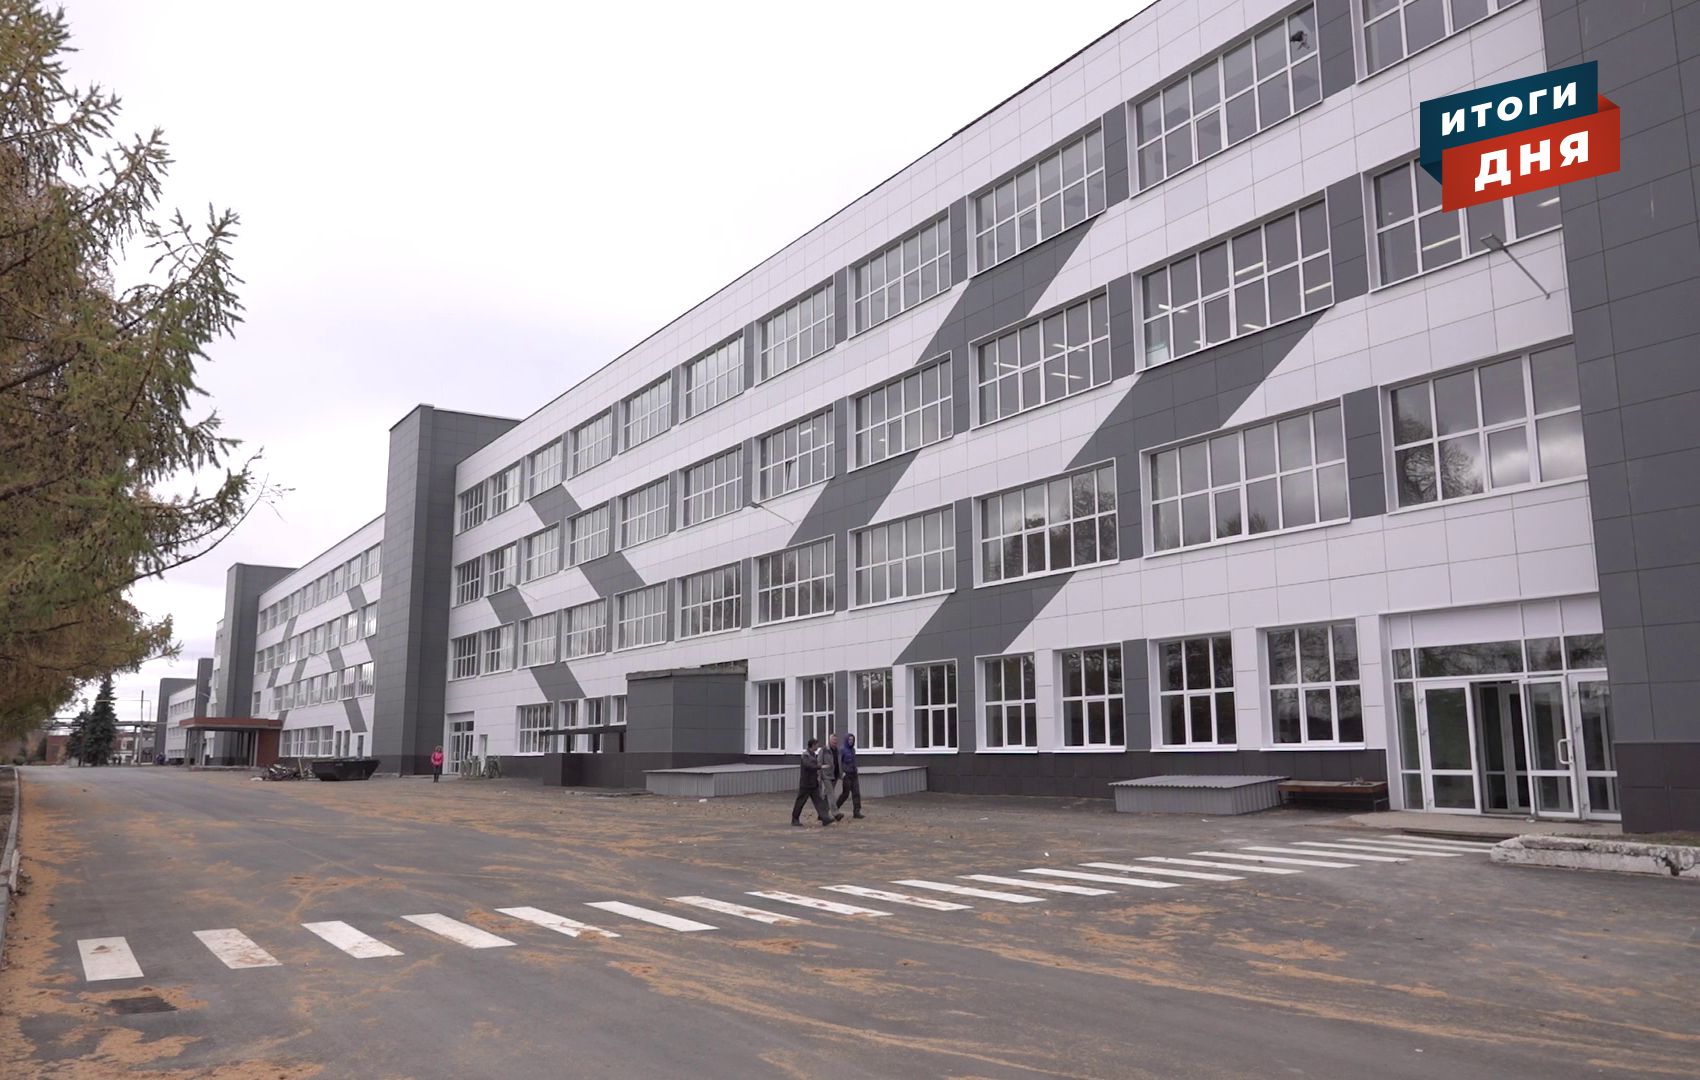 Итоги дня: заболевшие сотрудники «Ижевского механического завода», слежка за приезжающими и погода на выходные